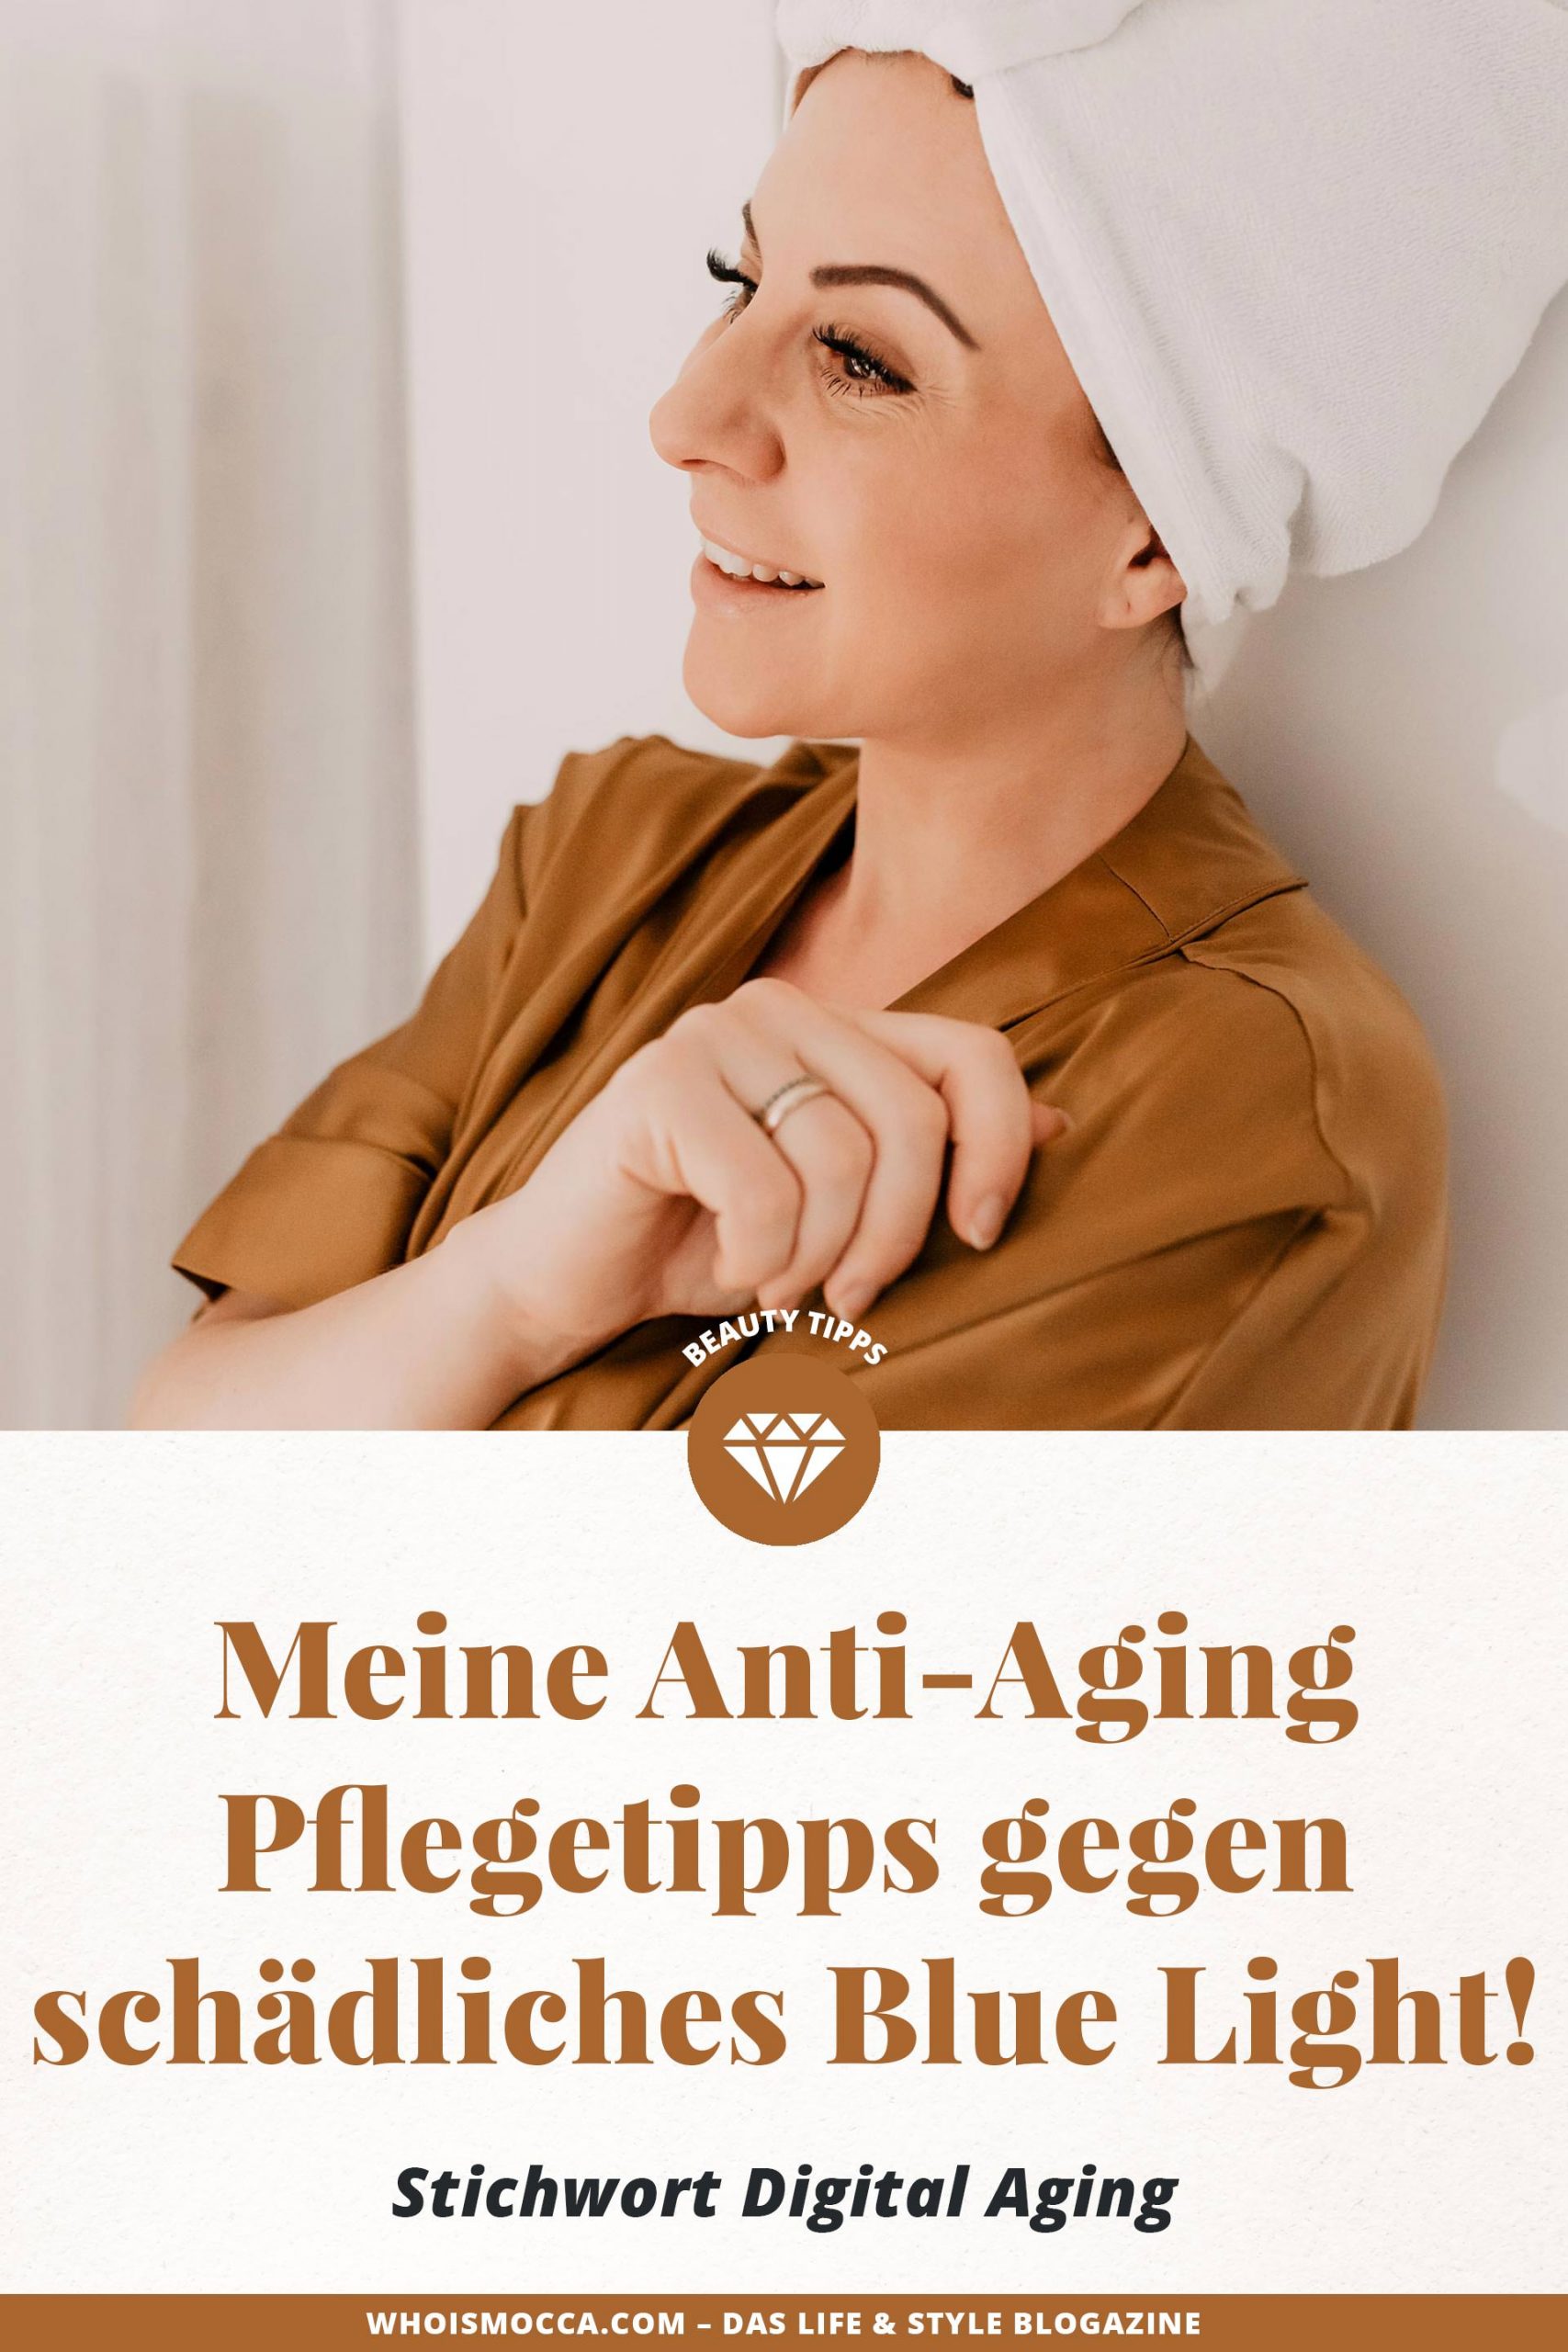 Digital Aging – oder zu Deutsch "Hautalterung durch blaues Bildschirm-Licht". Am Beautyblog findest du jetzt nützliche Anti-Aging Pflegetipps gegen schädliches Blue Light! www.whoismocca.com